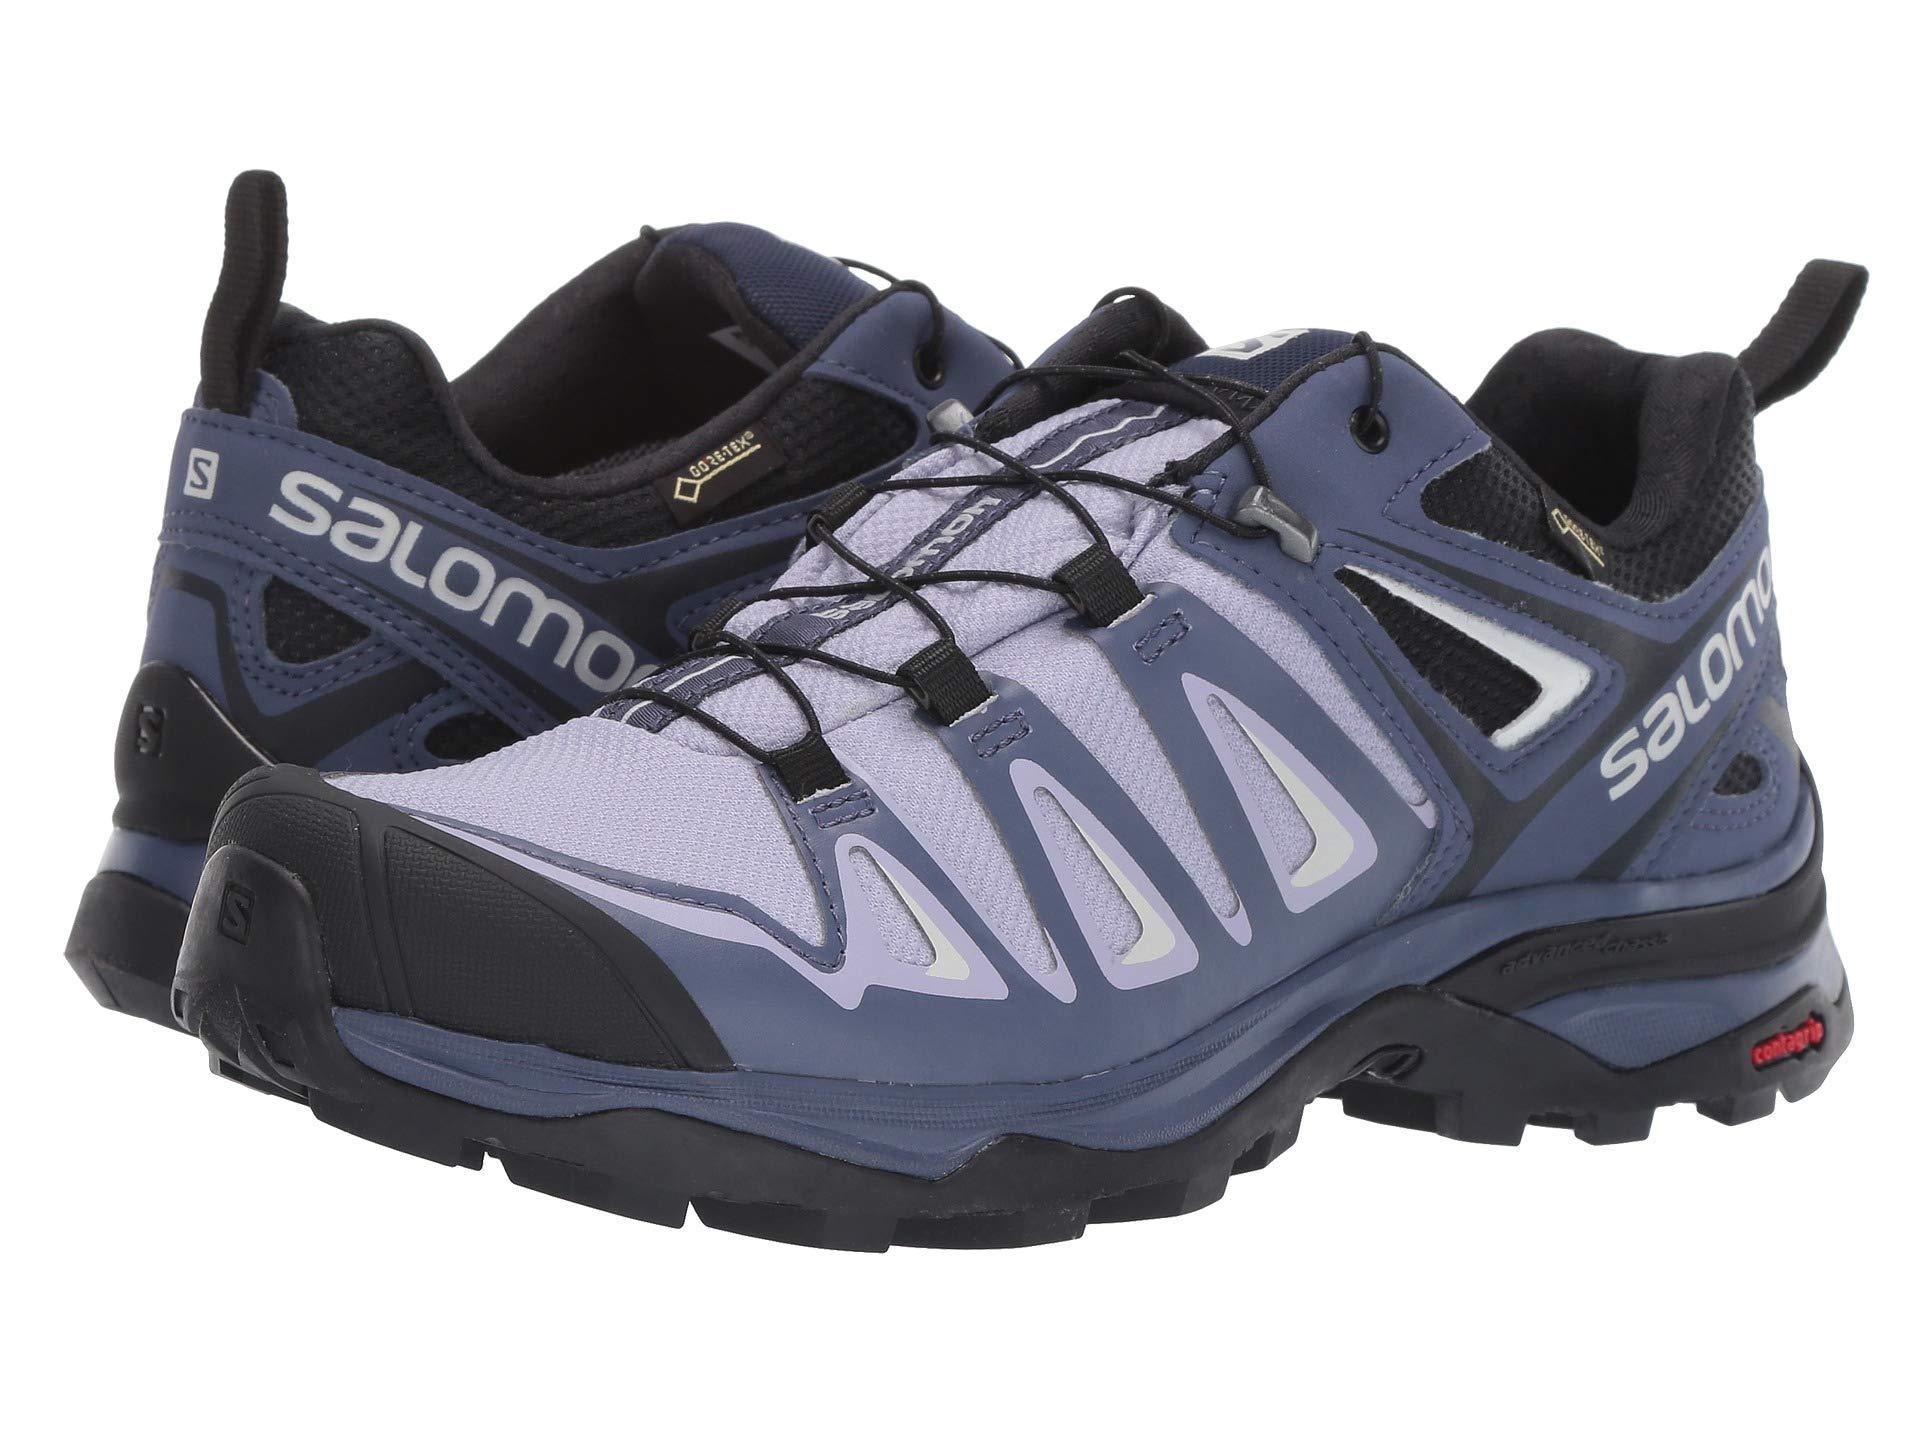 Salomon X Ultra 3 Gtx Hiking Shoe in Blue | Lyst